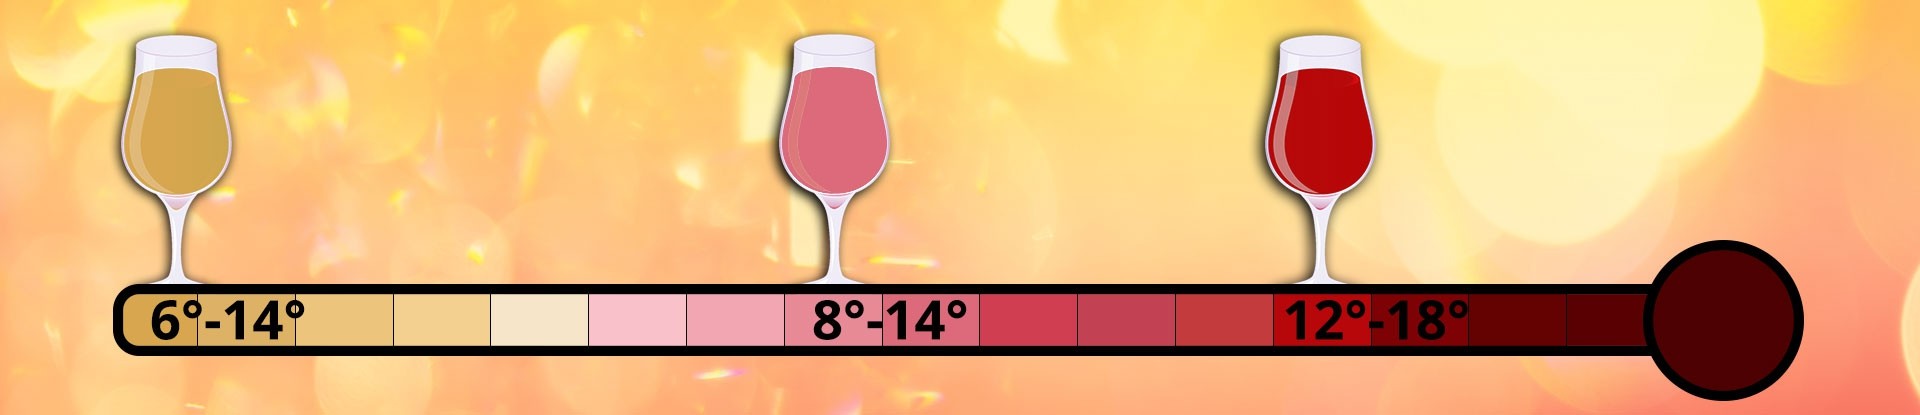 Temperaturscala mit Weingläsern